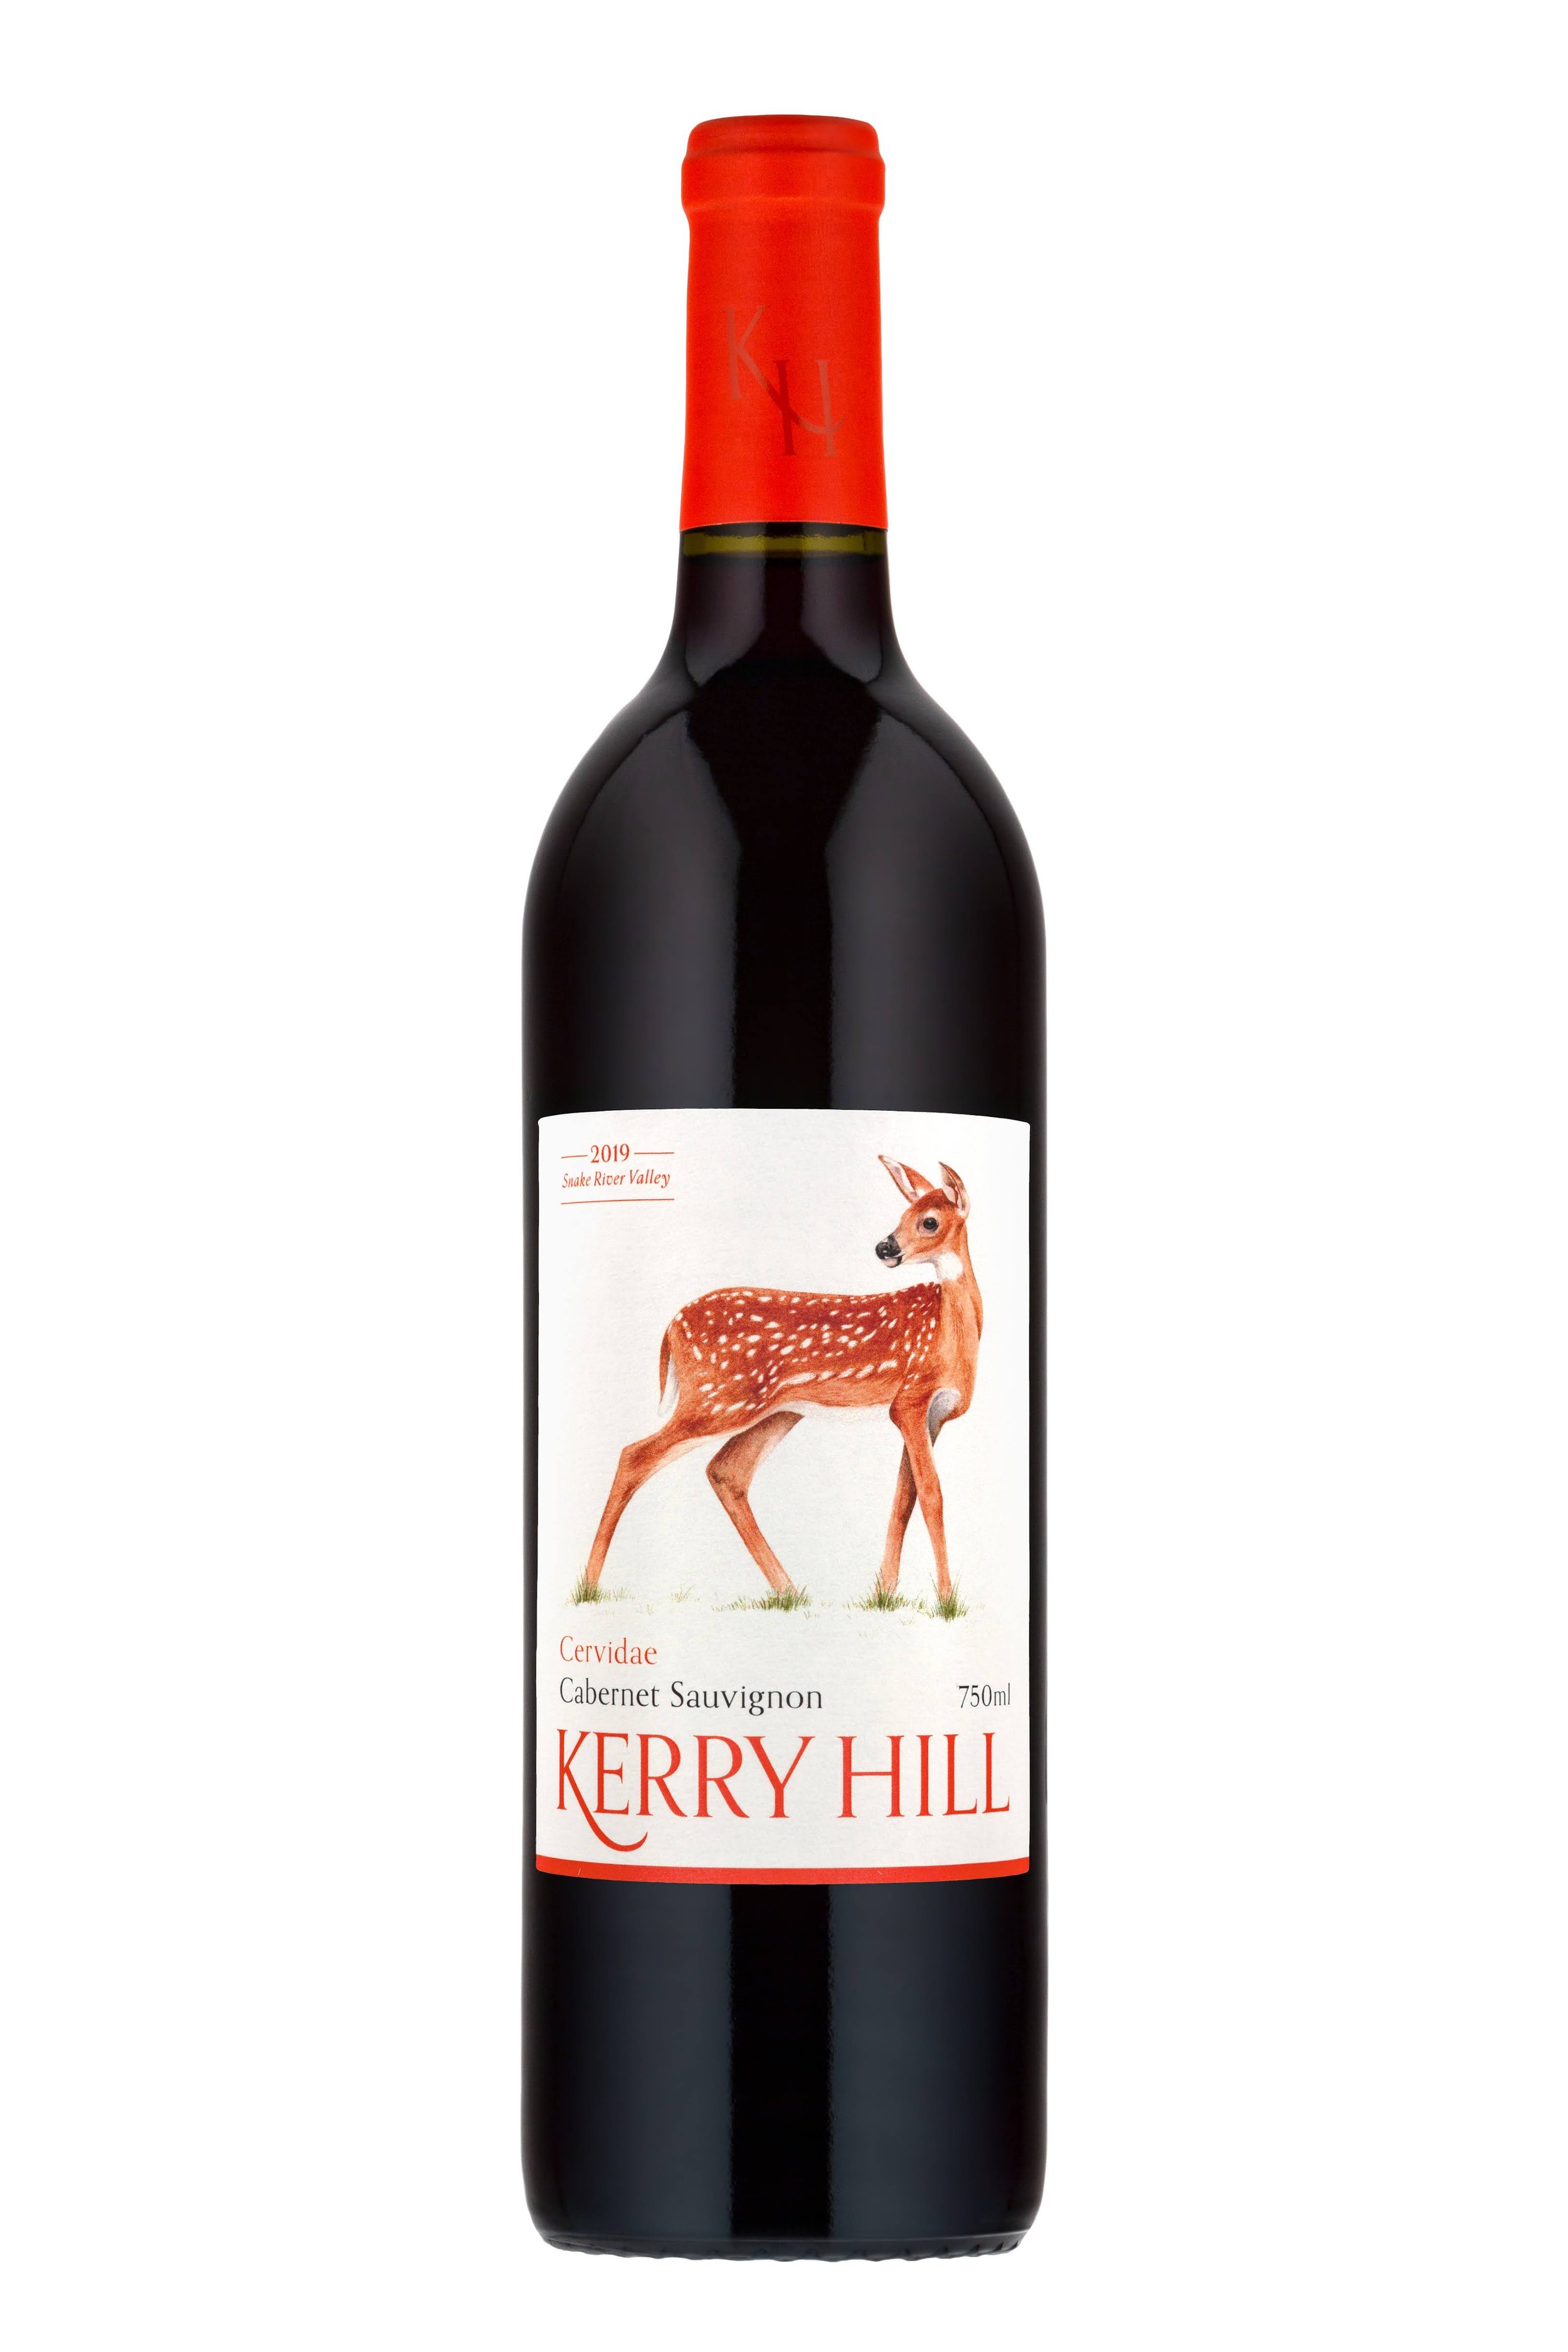 Bottle of Kerry Hill Cabernet Sauvignon